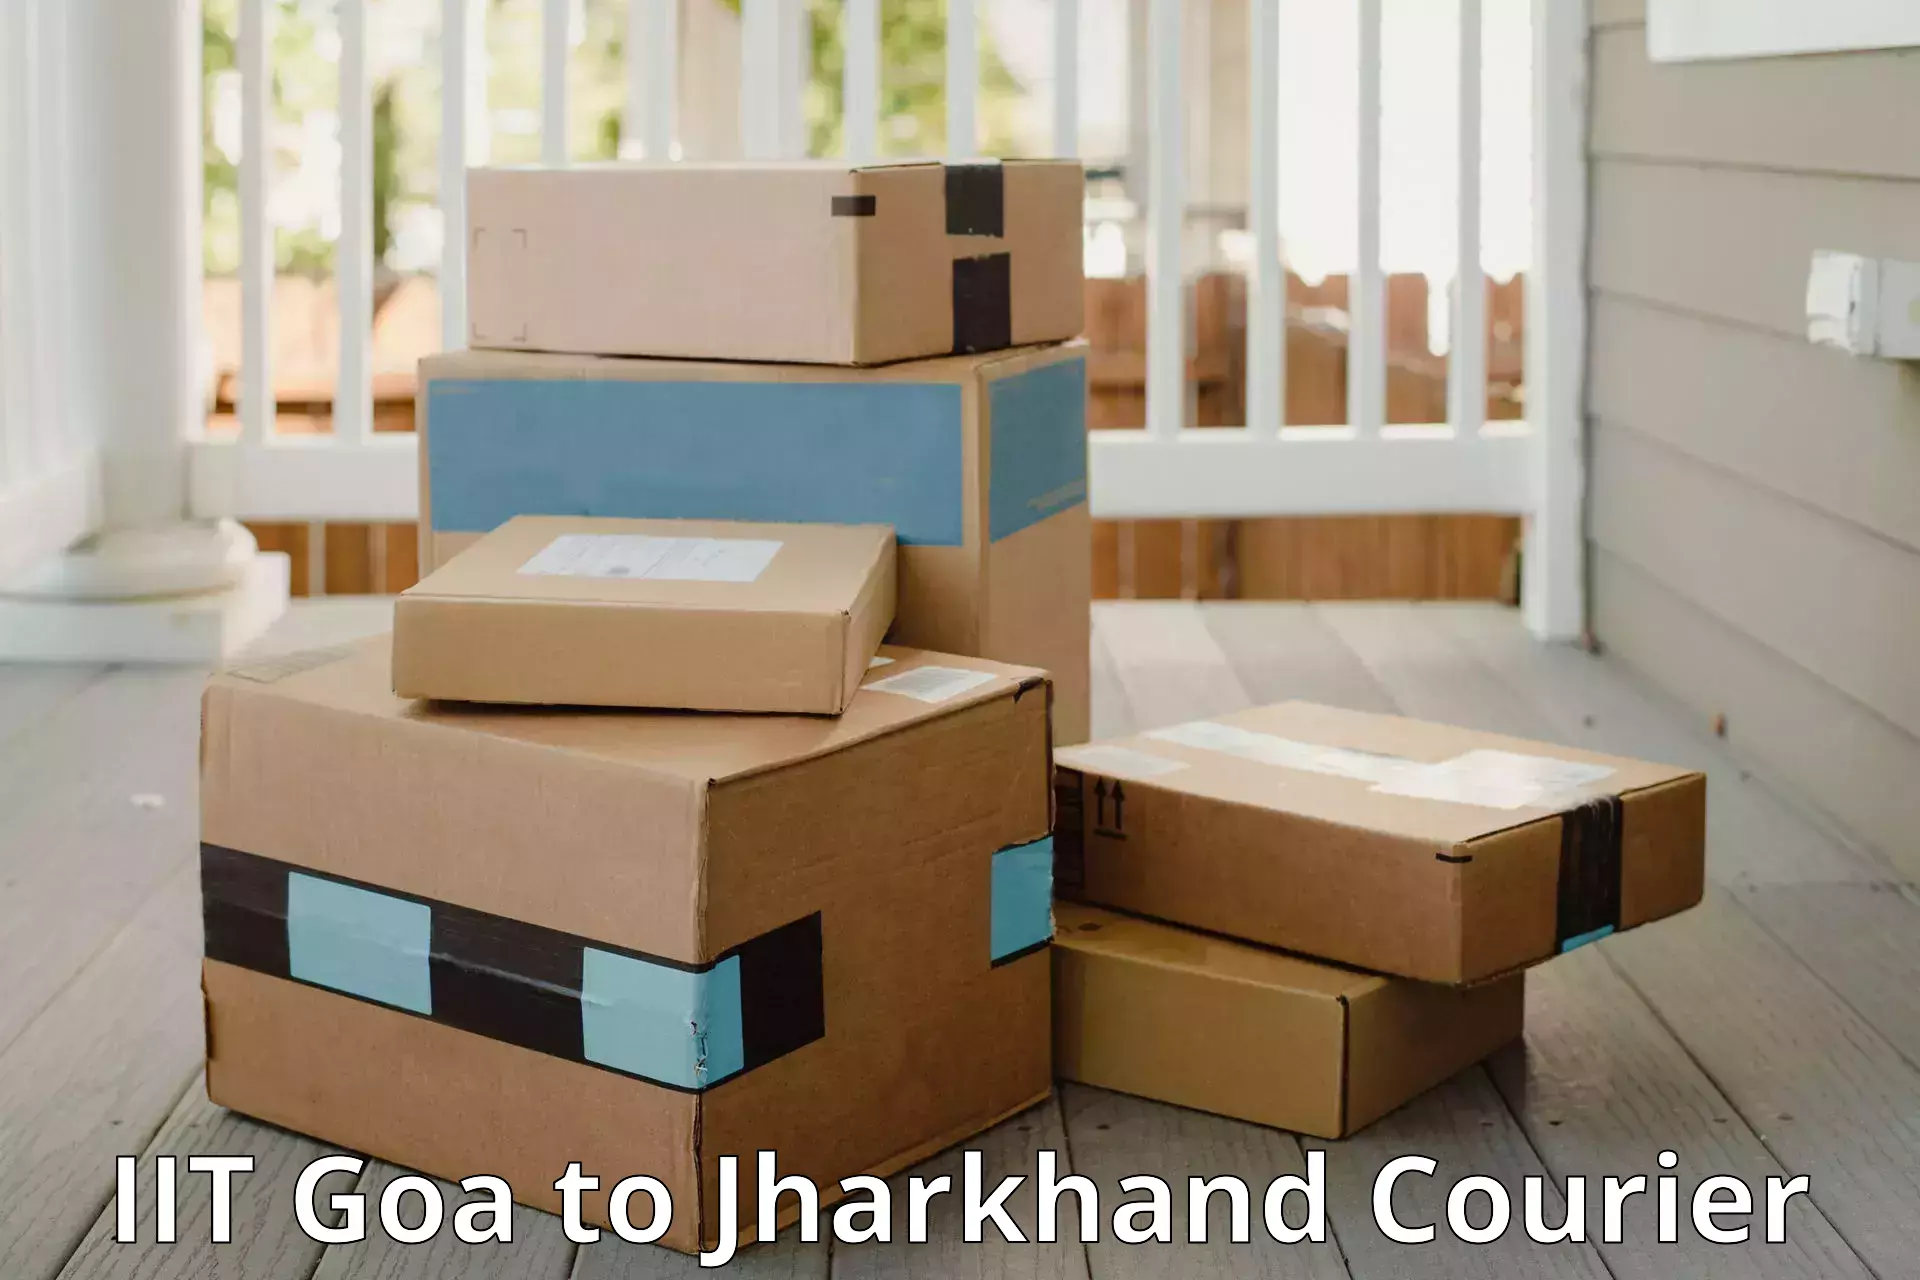 Holiday season luggage delivery IIT Goa to Jharkhand